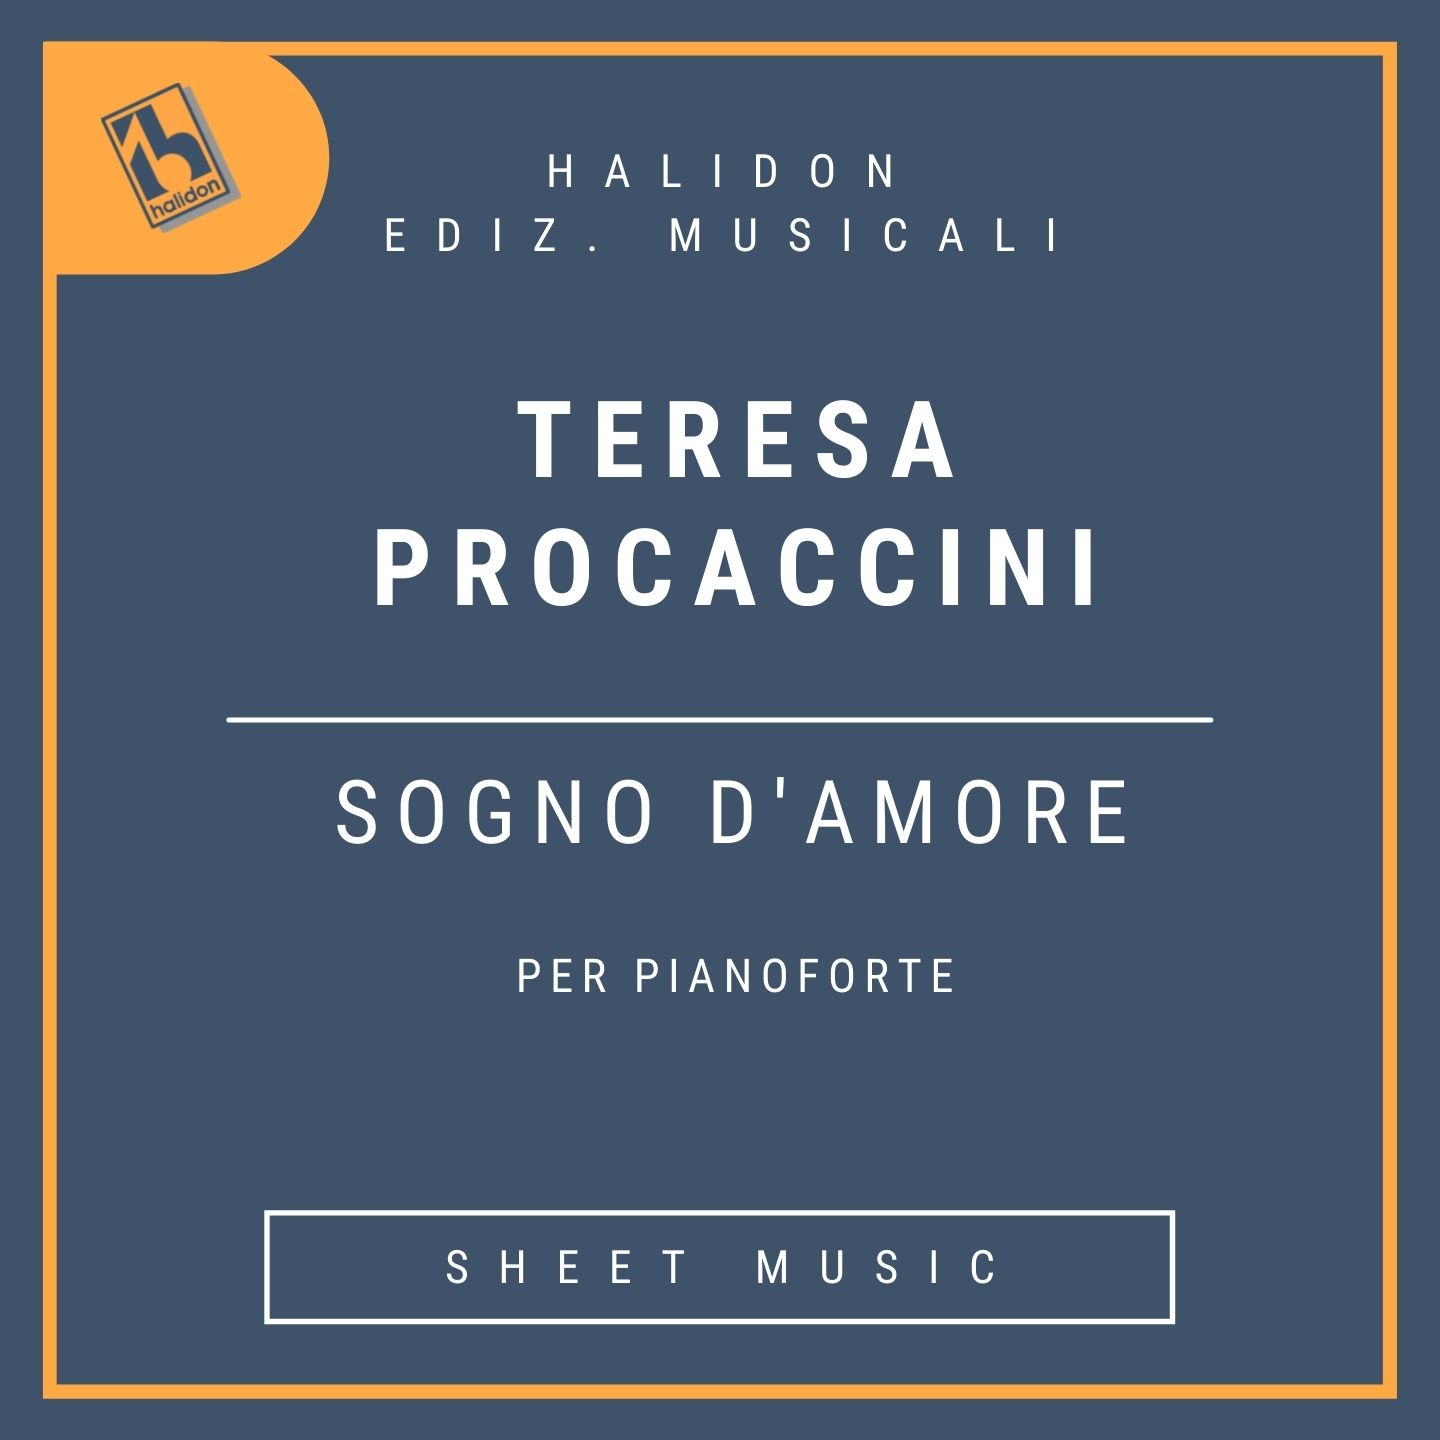 Teresa Procaccini - Sogno d'amore